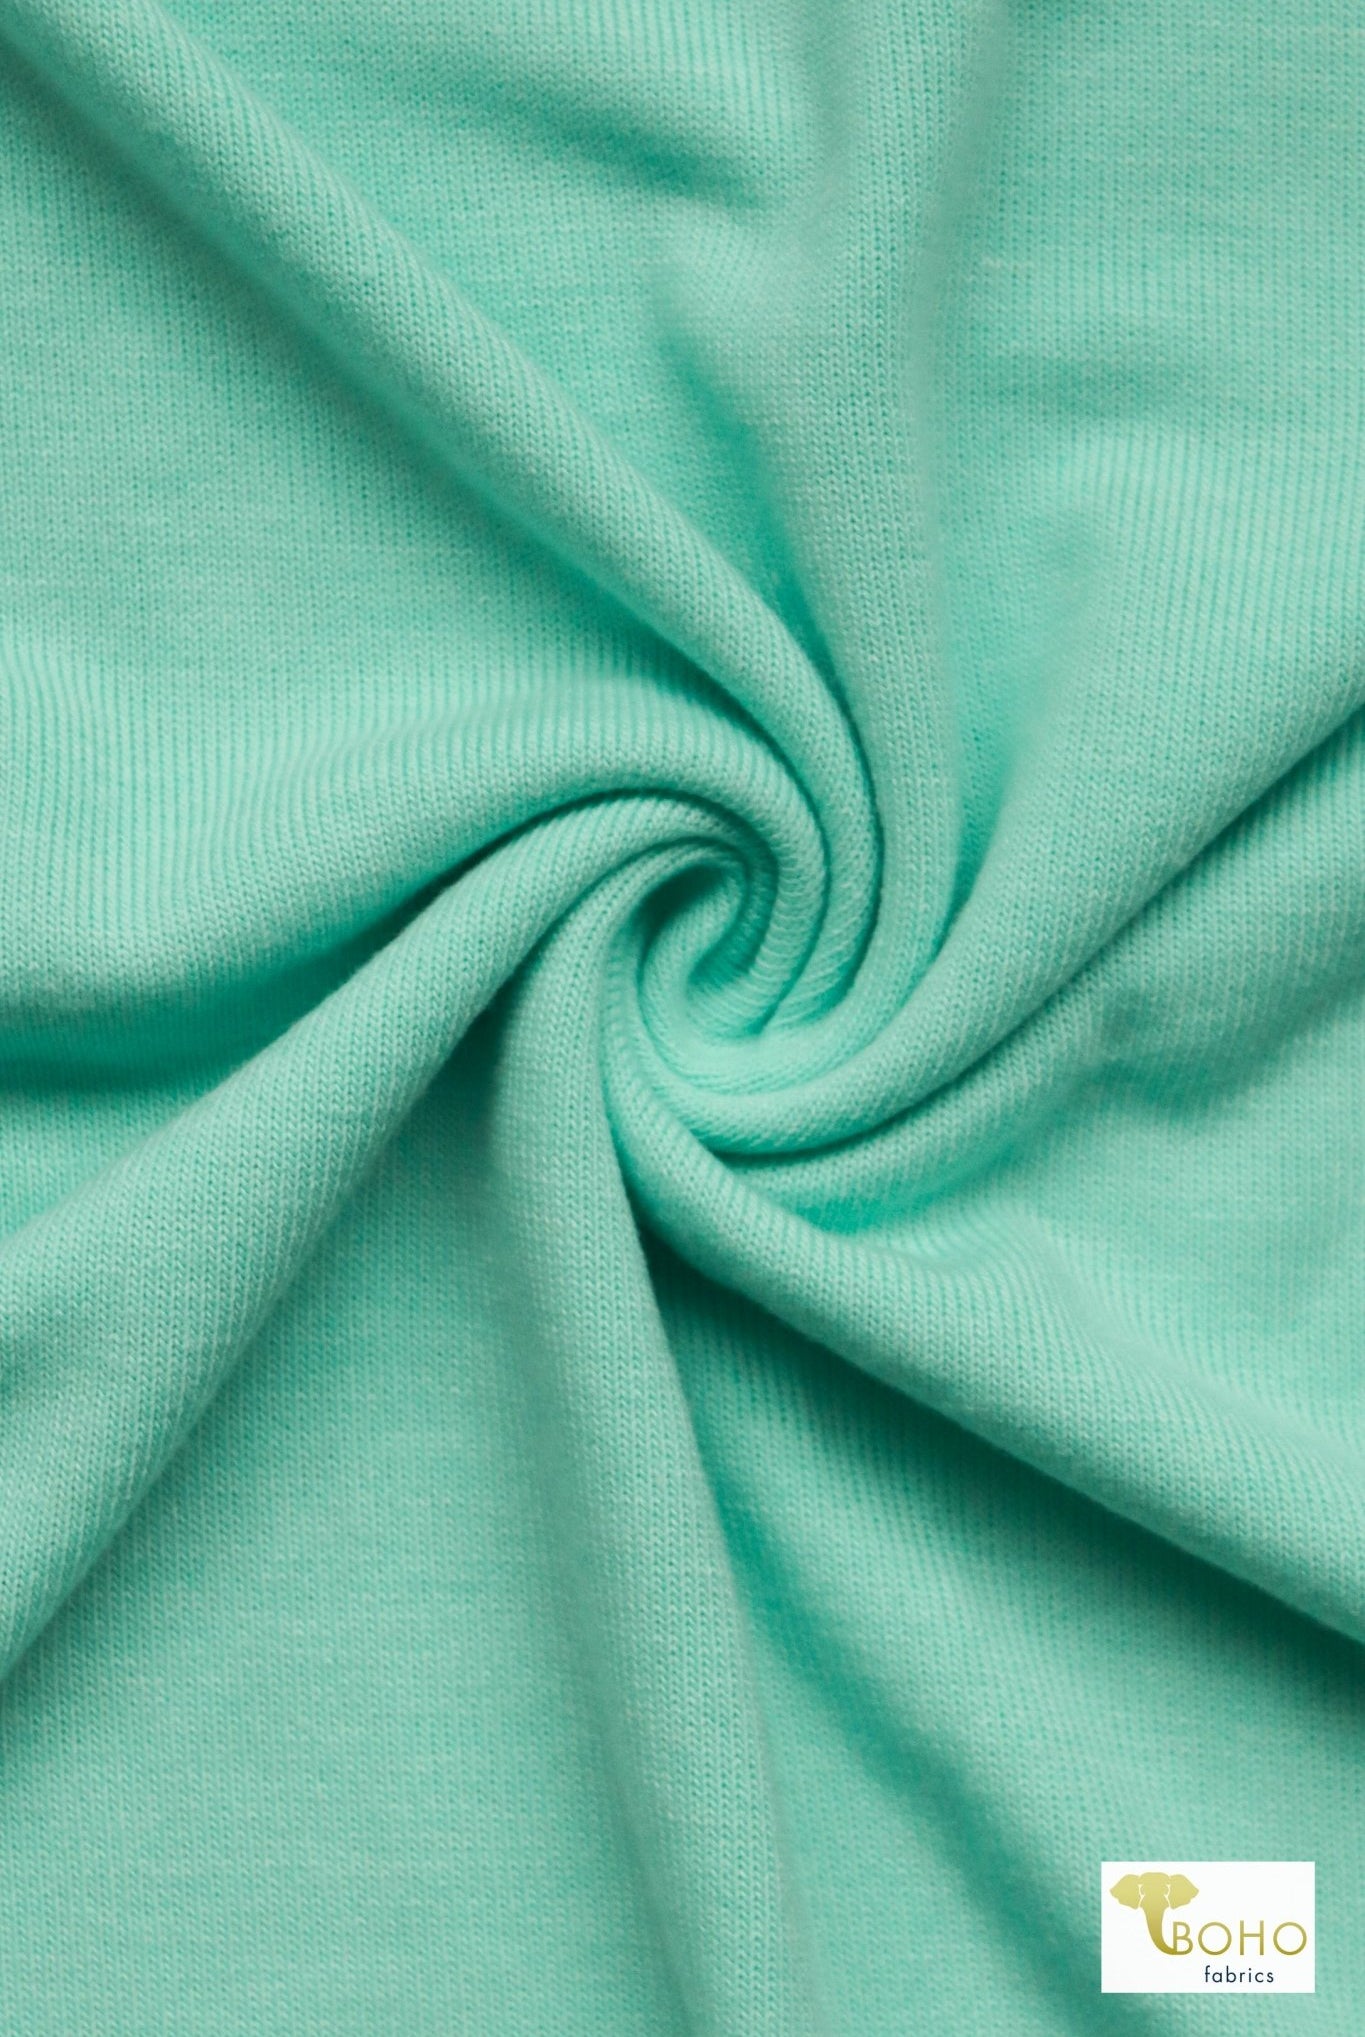 Aqua Sea, Sweater Knit - Boho Fabrics